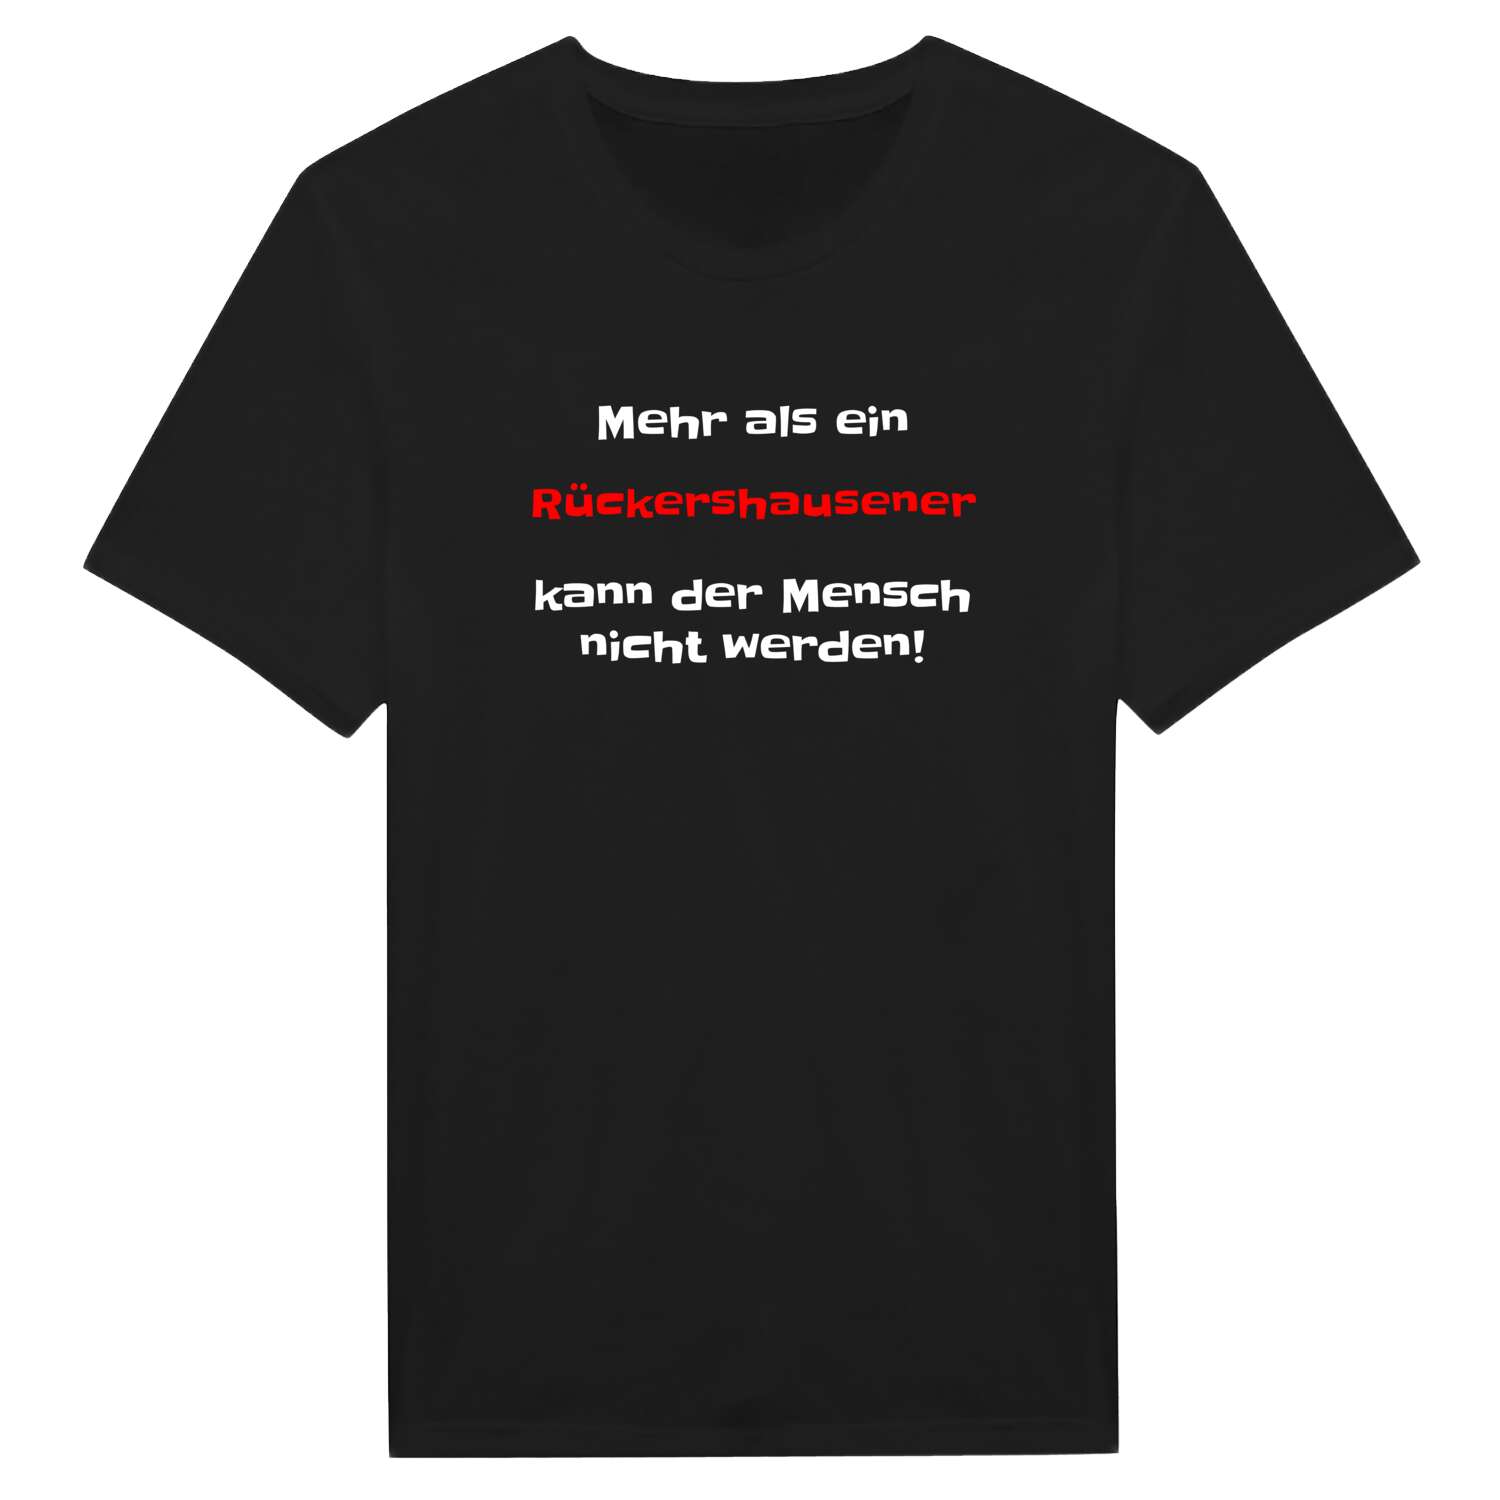 Rückershausen T-Shirt »Mehr als ein«